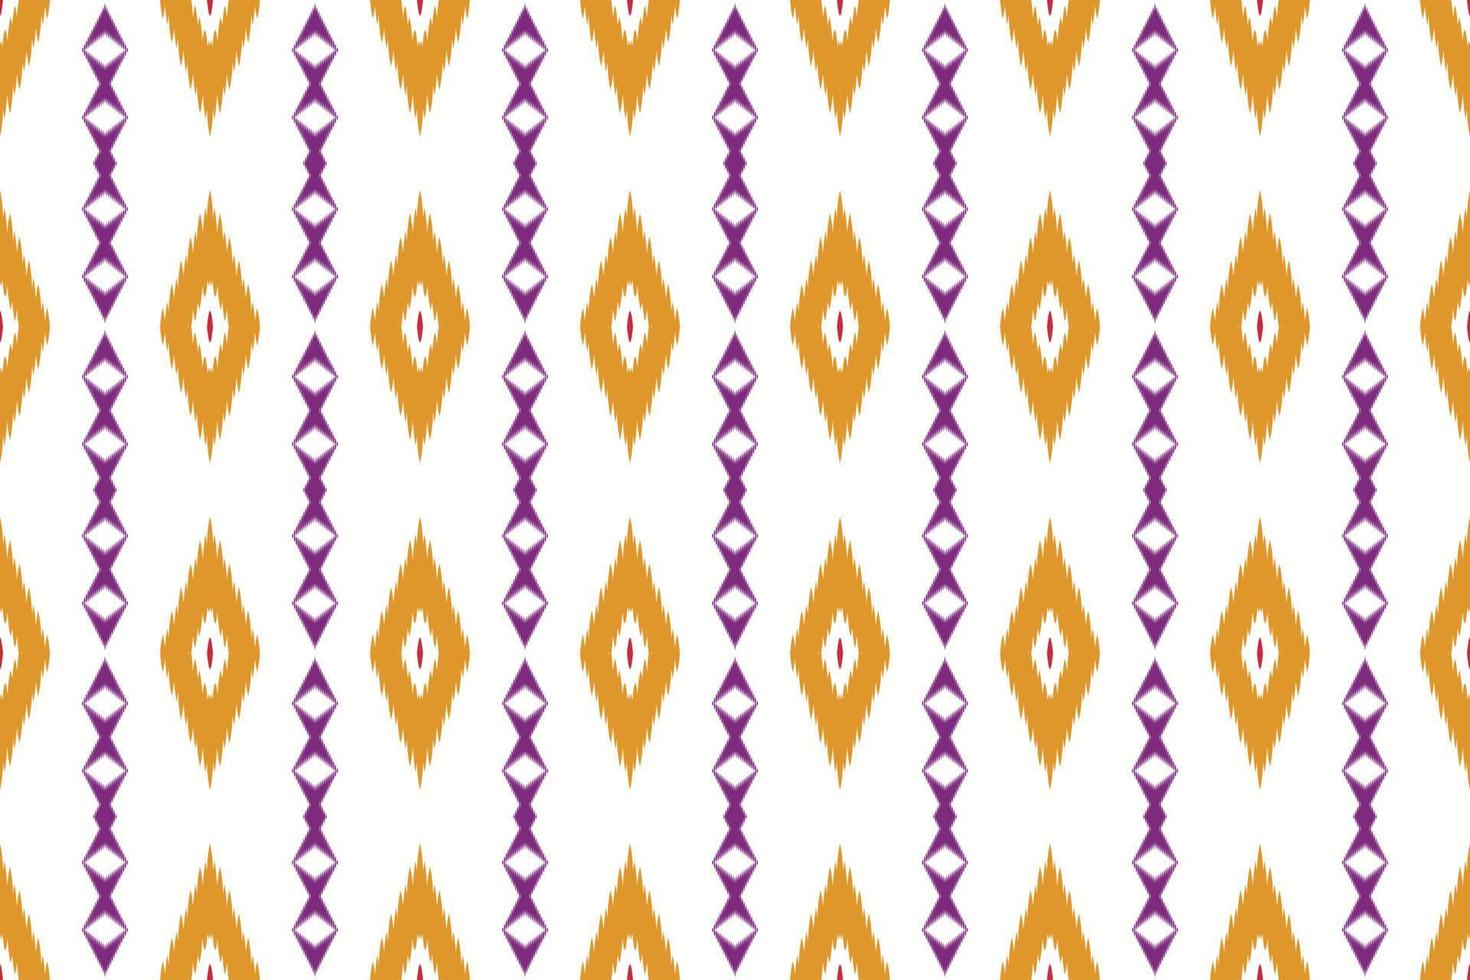 motiv ikat bakgrund stam- sparre borneo scandinavian batik bohemisk textur digital vektor design för skriva ut saree kurti tyg borsta symboler färgrutor